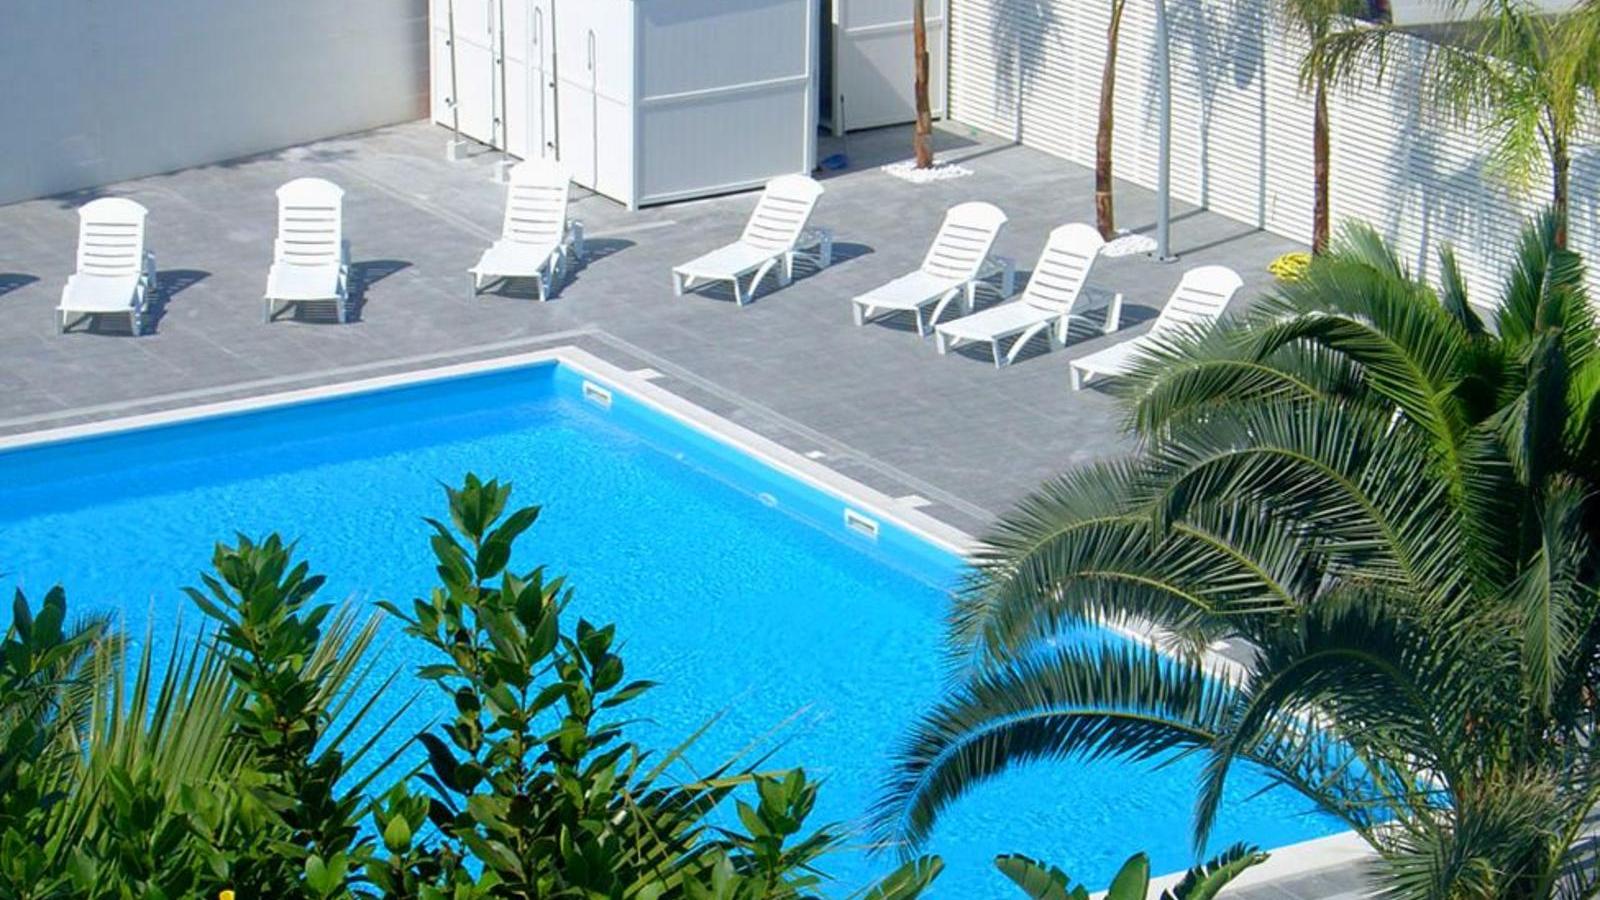 Hotel con piscina a Barletta - Hotel La Terrazza | Localtourism.it